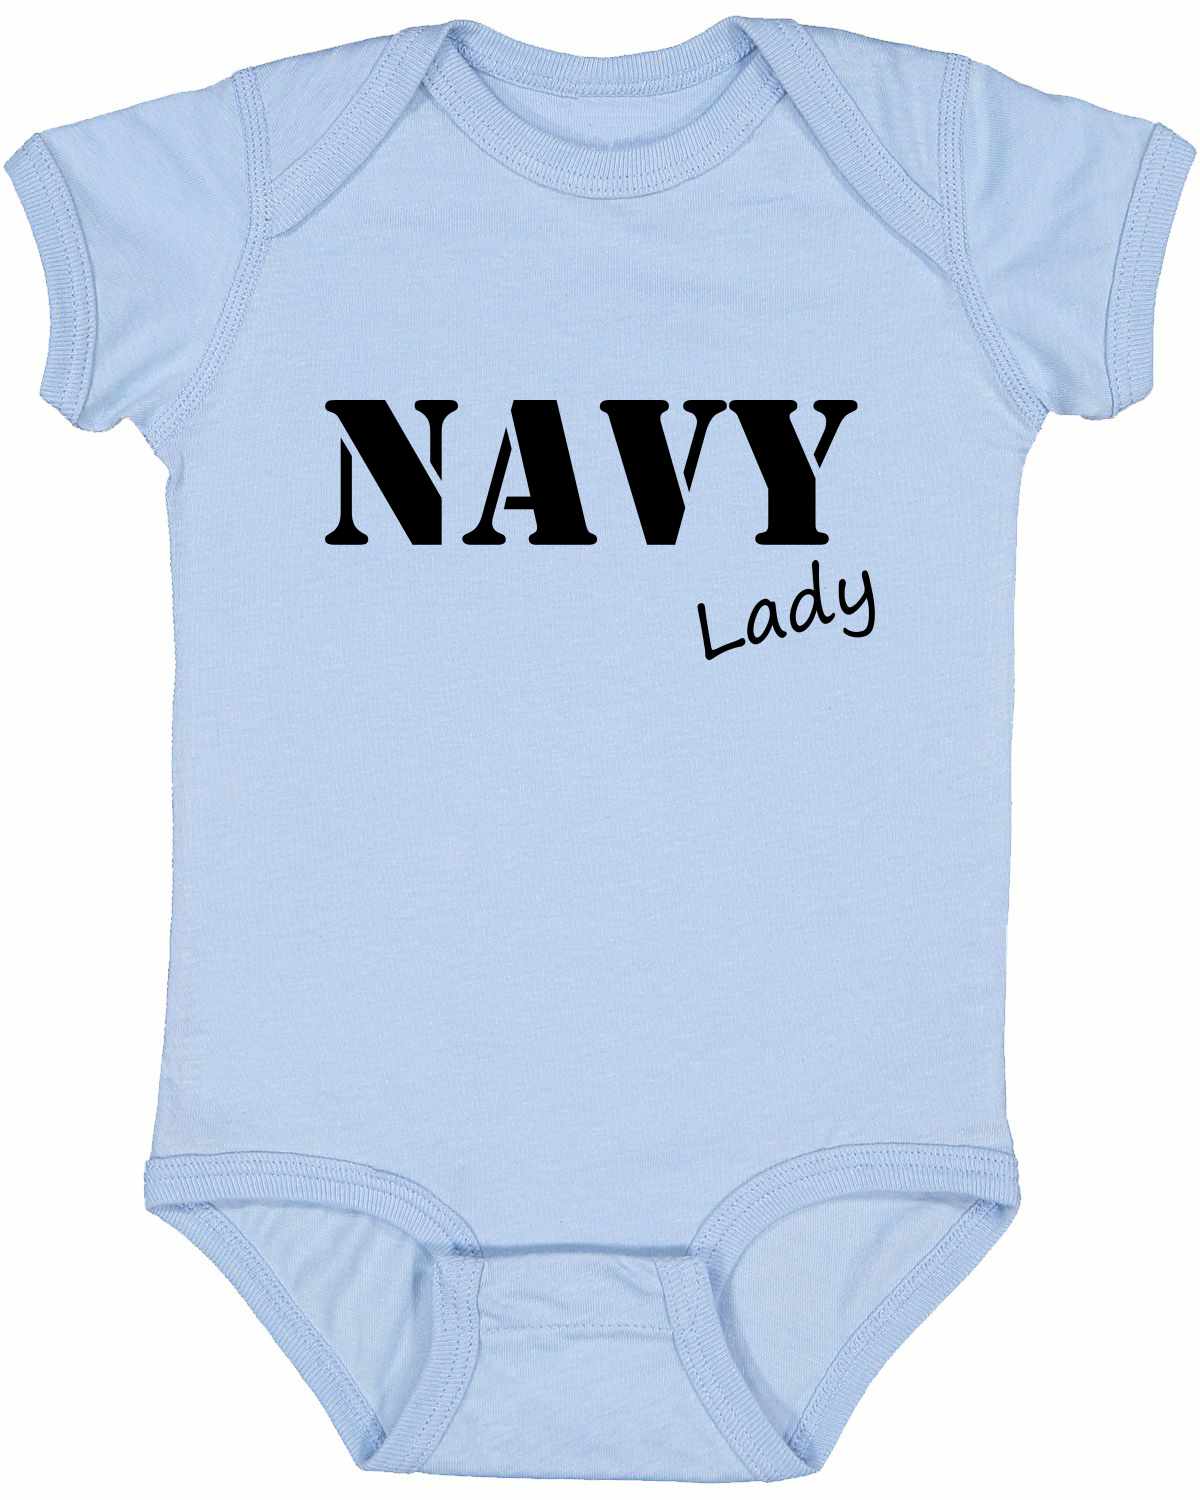 NAVY Lady Infant BodySuit (#1114-10)